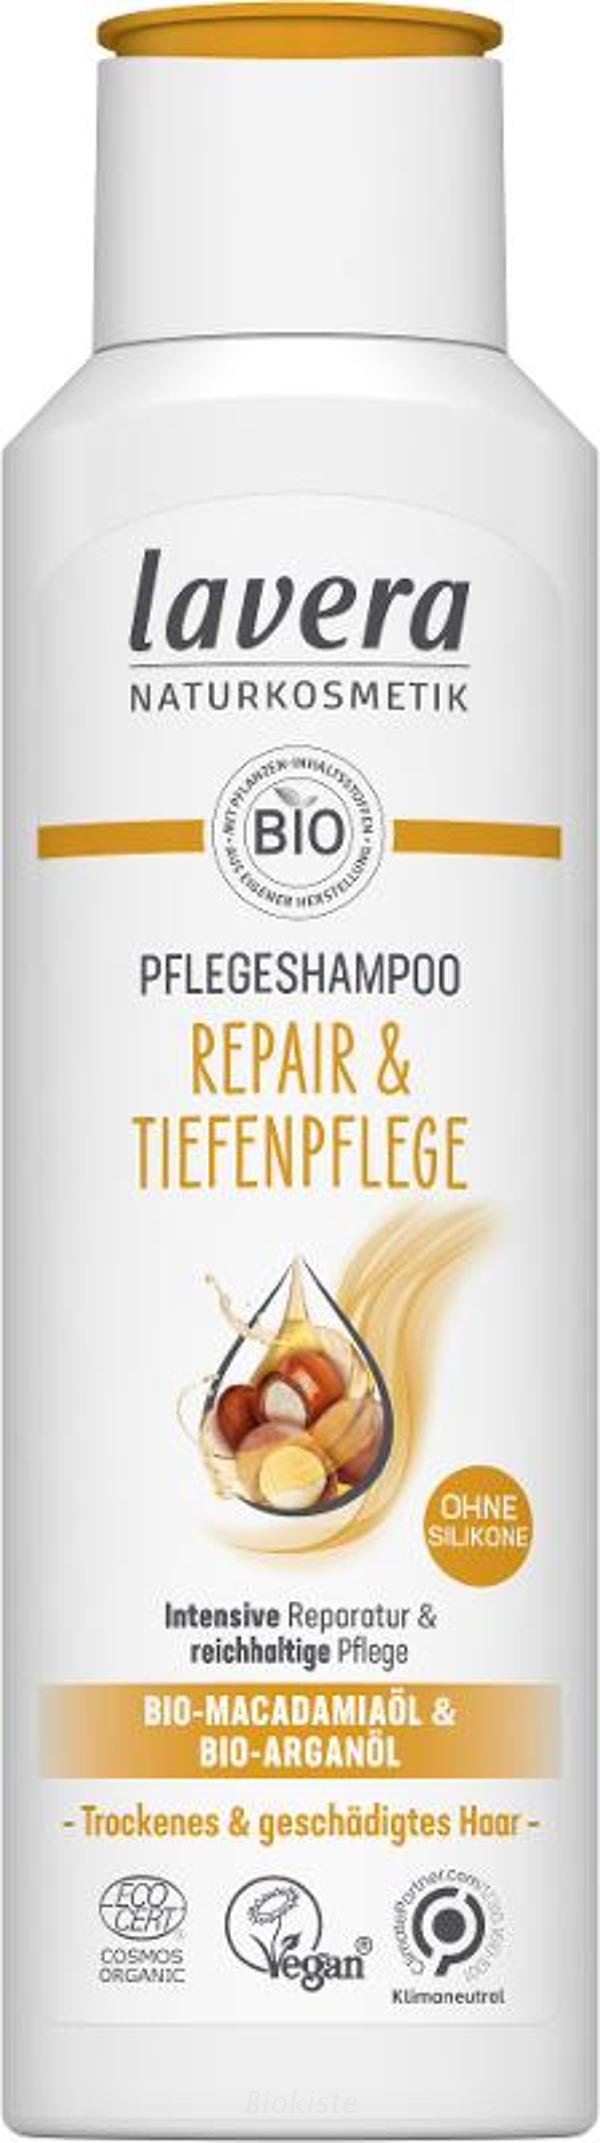 Produktfoto zu Shampoo Expert Repair und Tiefenpflege 250 ml